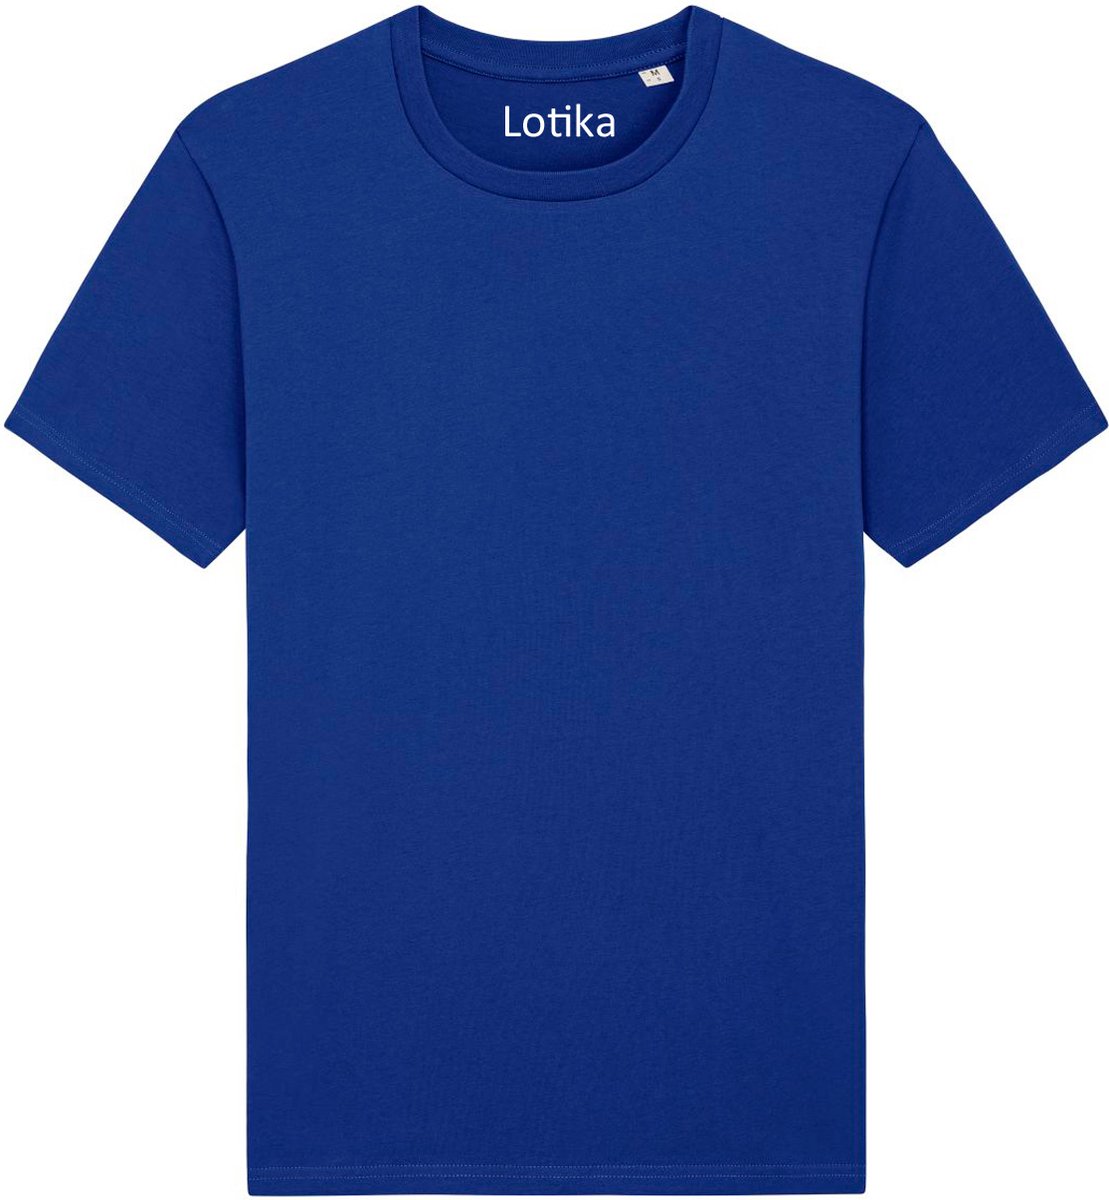 Lotika - Daan T-shirt biologisch katoen worker blue